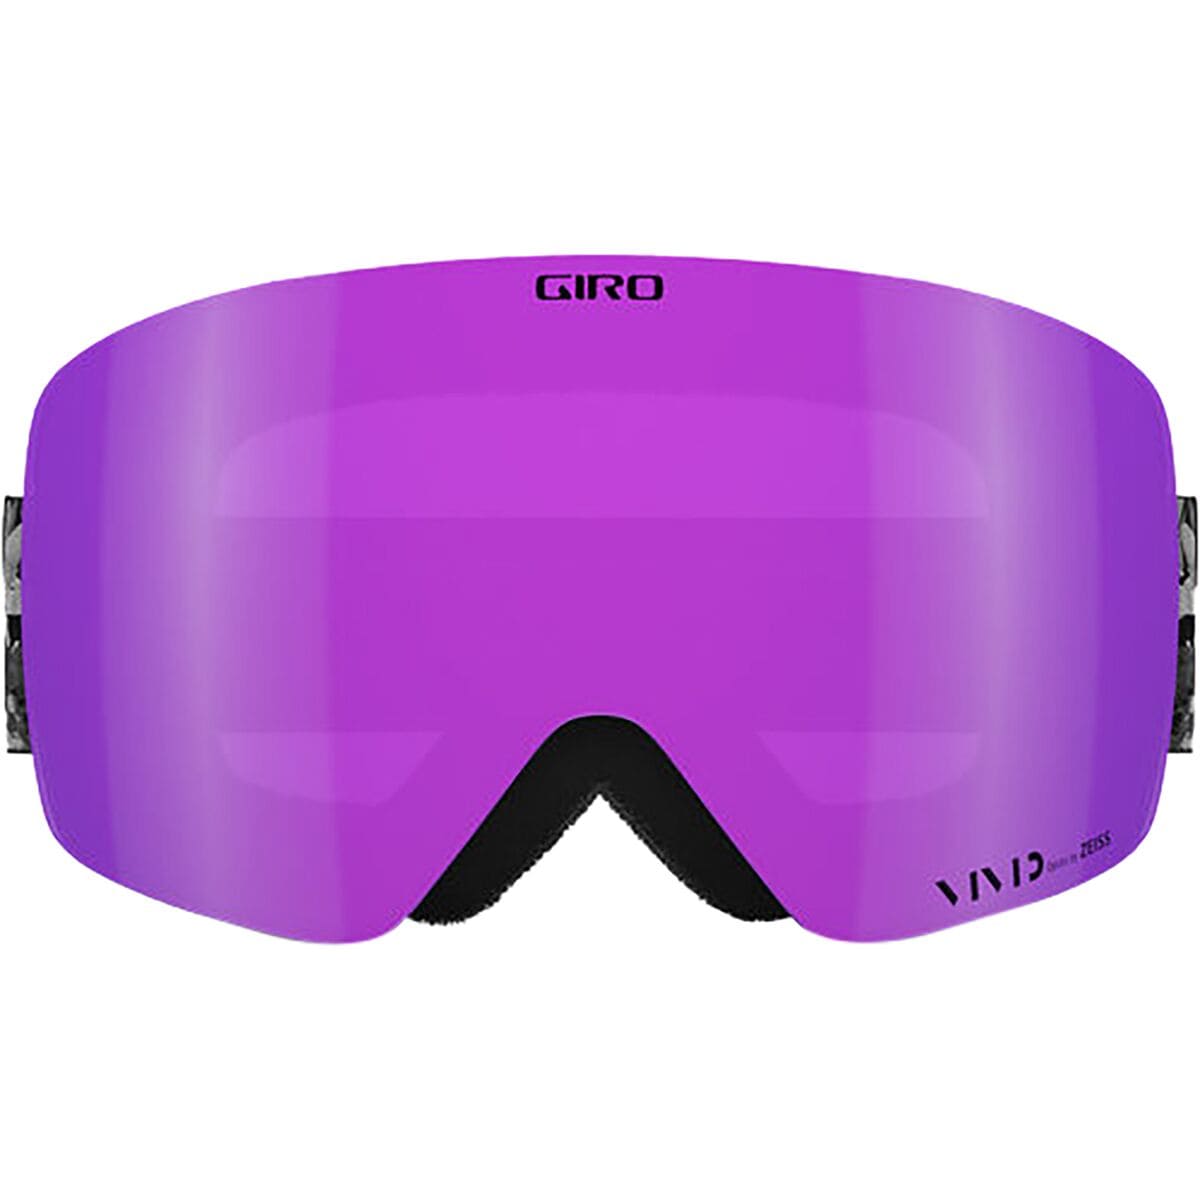 取寄) ジロ コンツアー Vivid Vivid Giro Black Goggles Contour RS